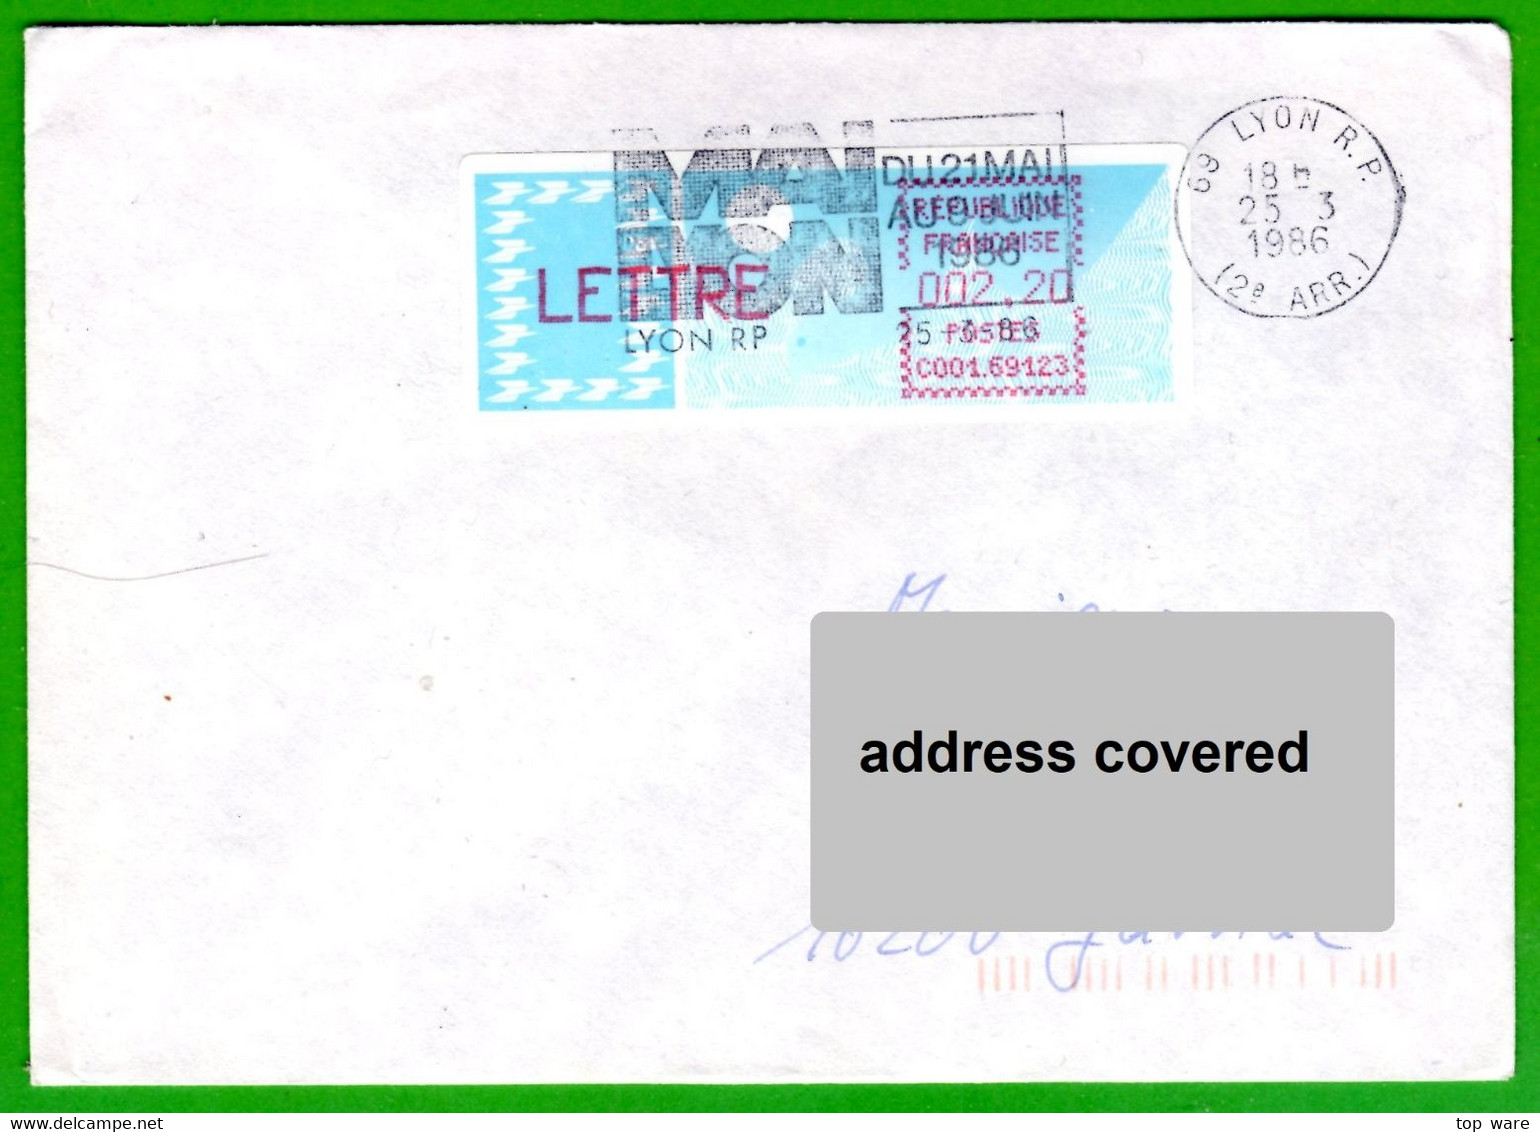 France LSA ATM Stamps C001.69123 / Michel 6.4 Zd / LETTRE 2,20 On Cover 25.3.86 Lyon RP / Distributeurs Automatenmarken - 1985 Carta « Carrier »